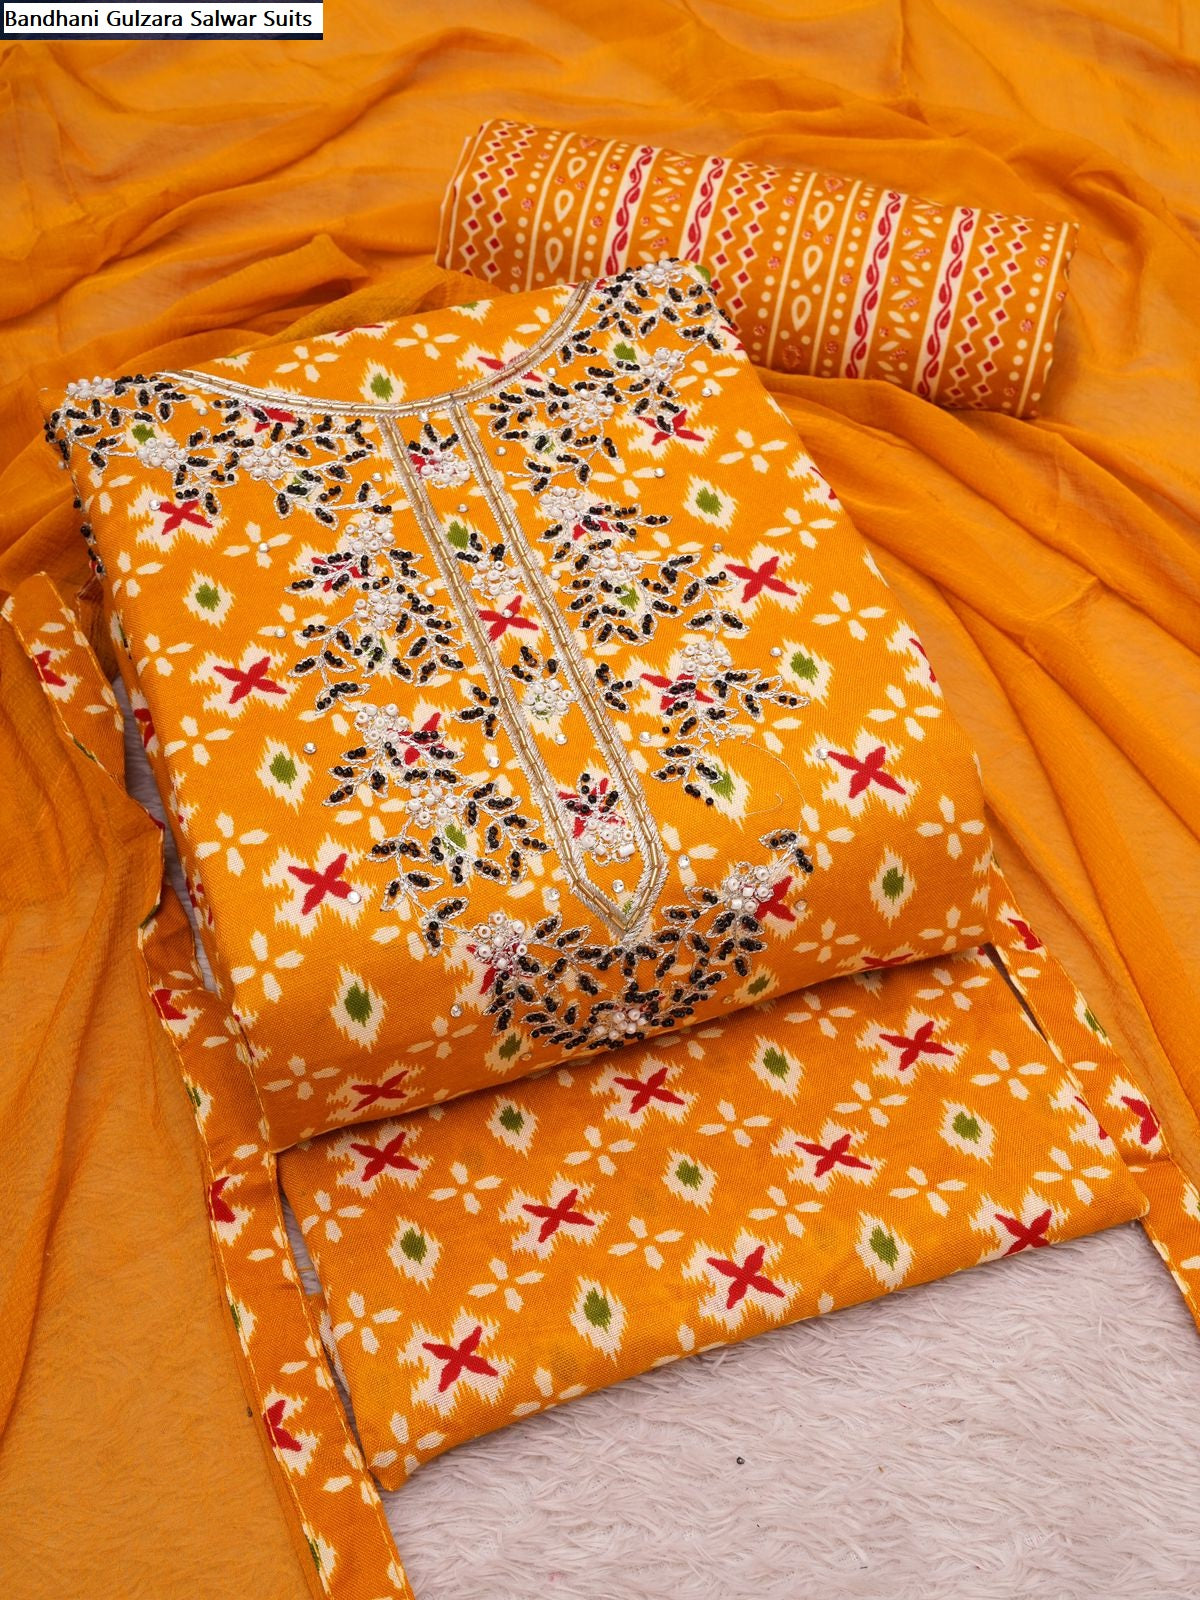 Bandhani Gulzara Cotton Salwar Suits